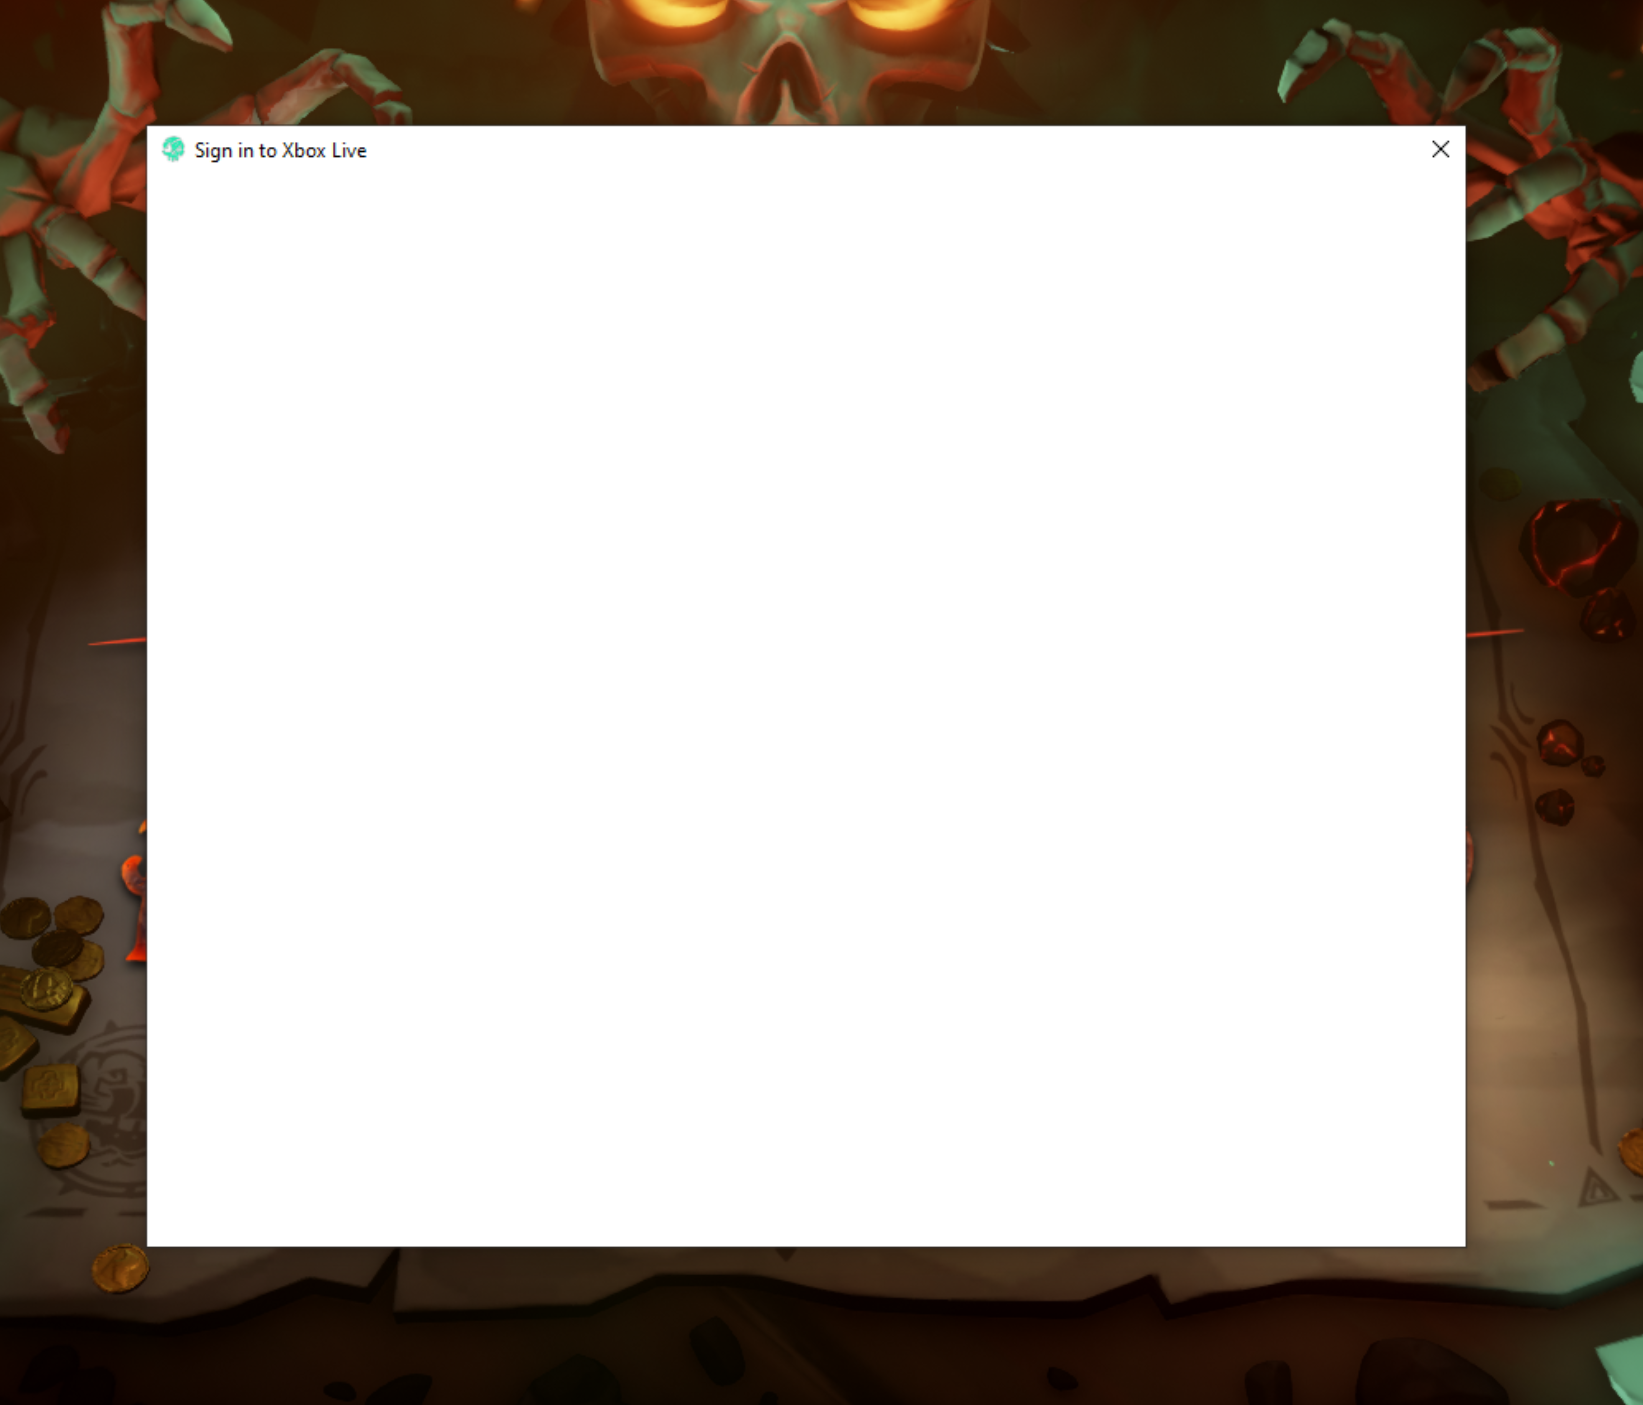 Captura de pantalla de un mensaje de inicio de sesión de Xbox Live vacío con un fondo blanco